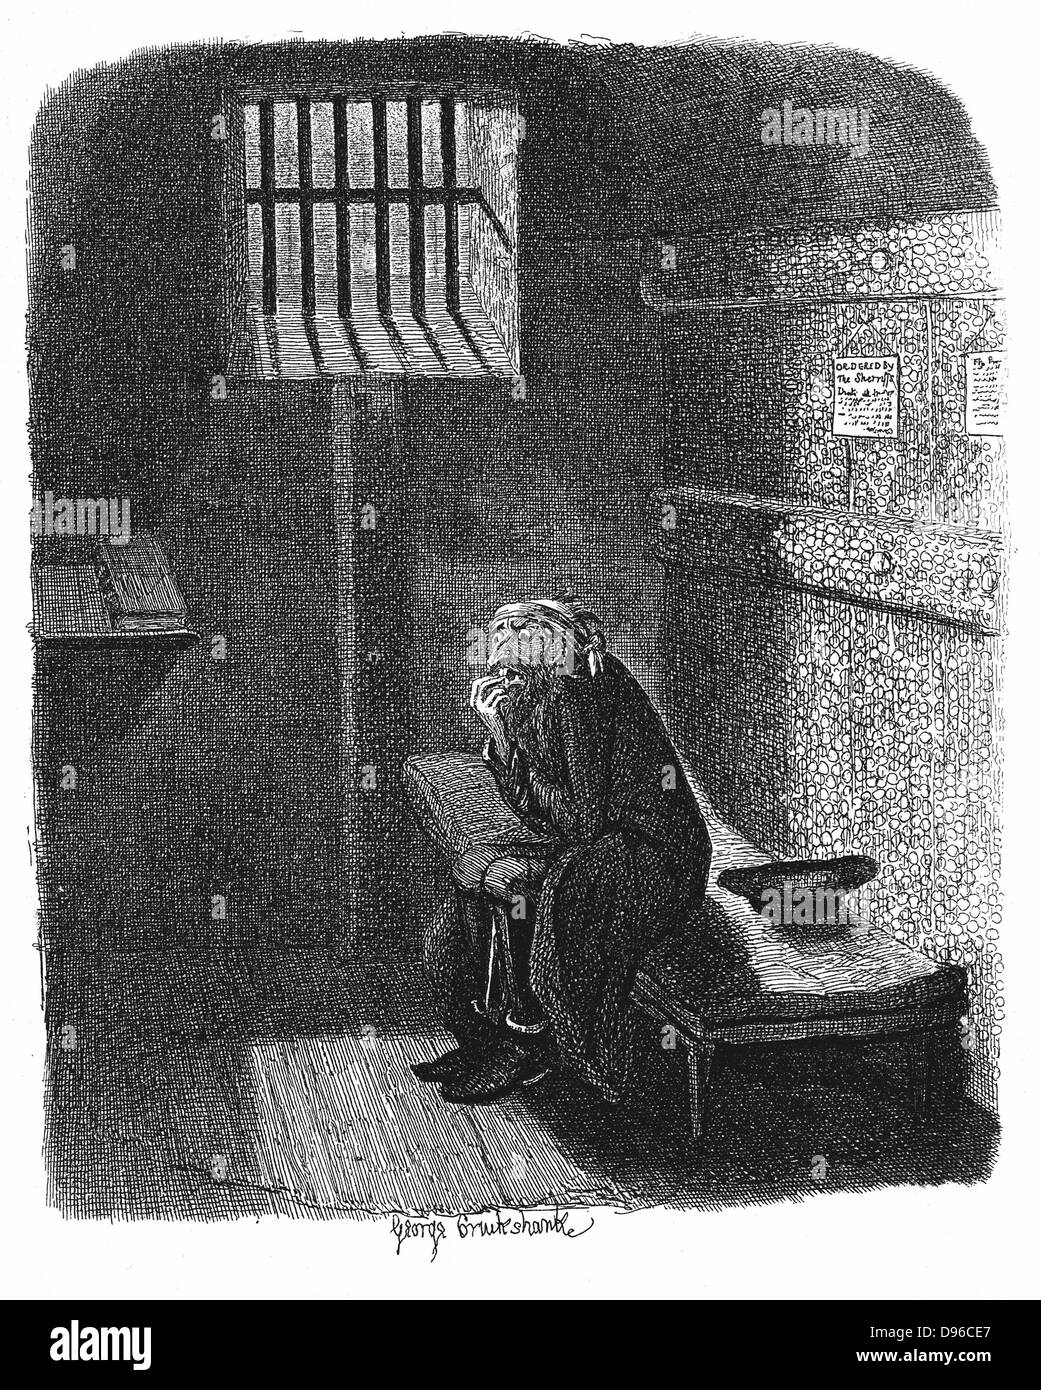 Dans la cellule de Fagin condamné dans la prison de Newgate en attente de son exécution. George Cruikshank illustration pour Charles Dickens 'Twist' Oiliver, Londres, 1837-1838. Gravure Banque D'Images